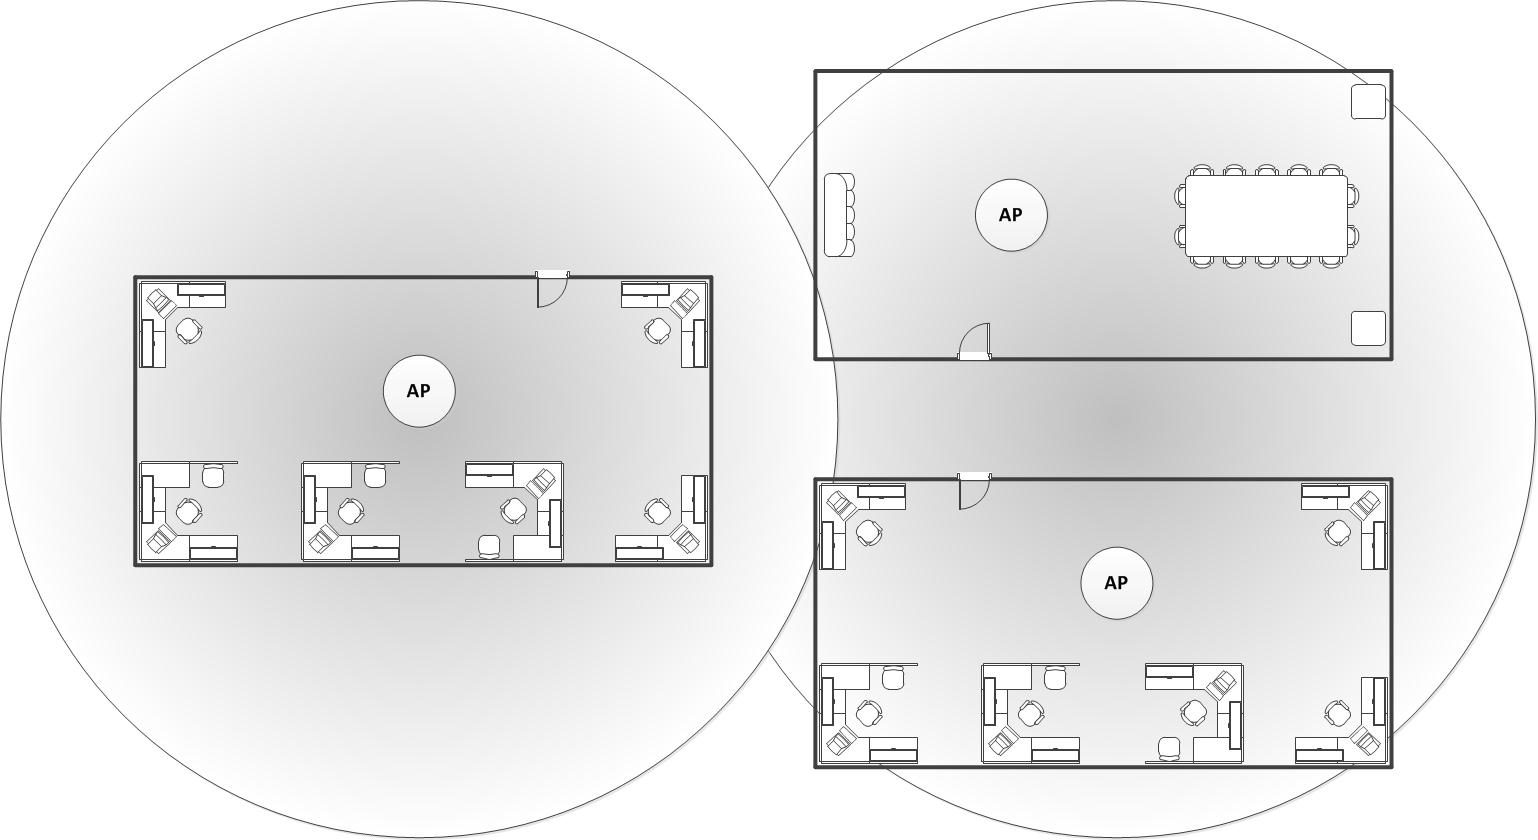 Diagrama de la ubicación del dispositivo AP